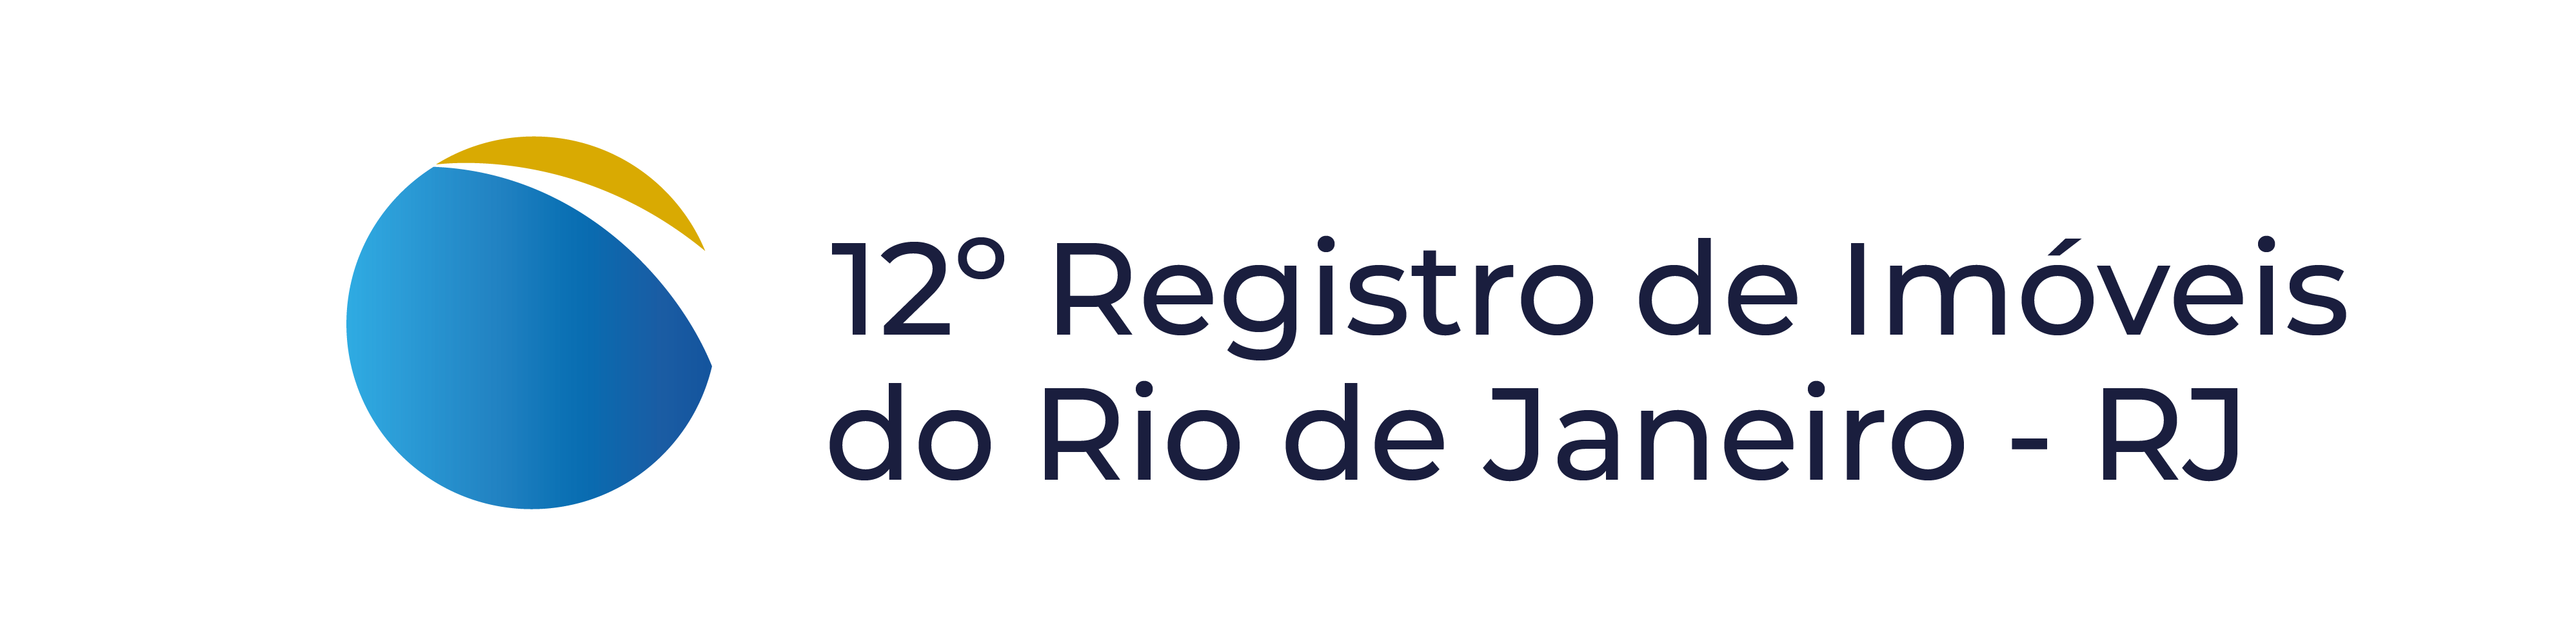 12 Registro de Imveis do Rio de Janeiro